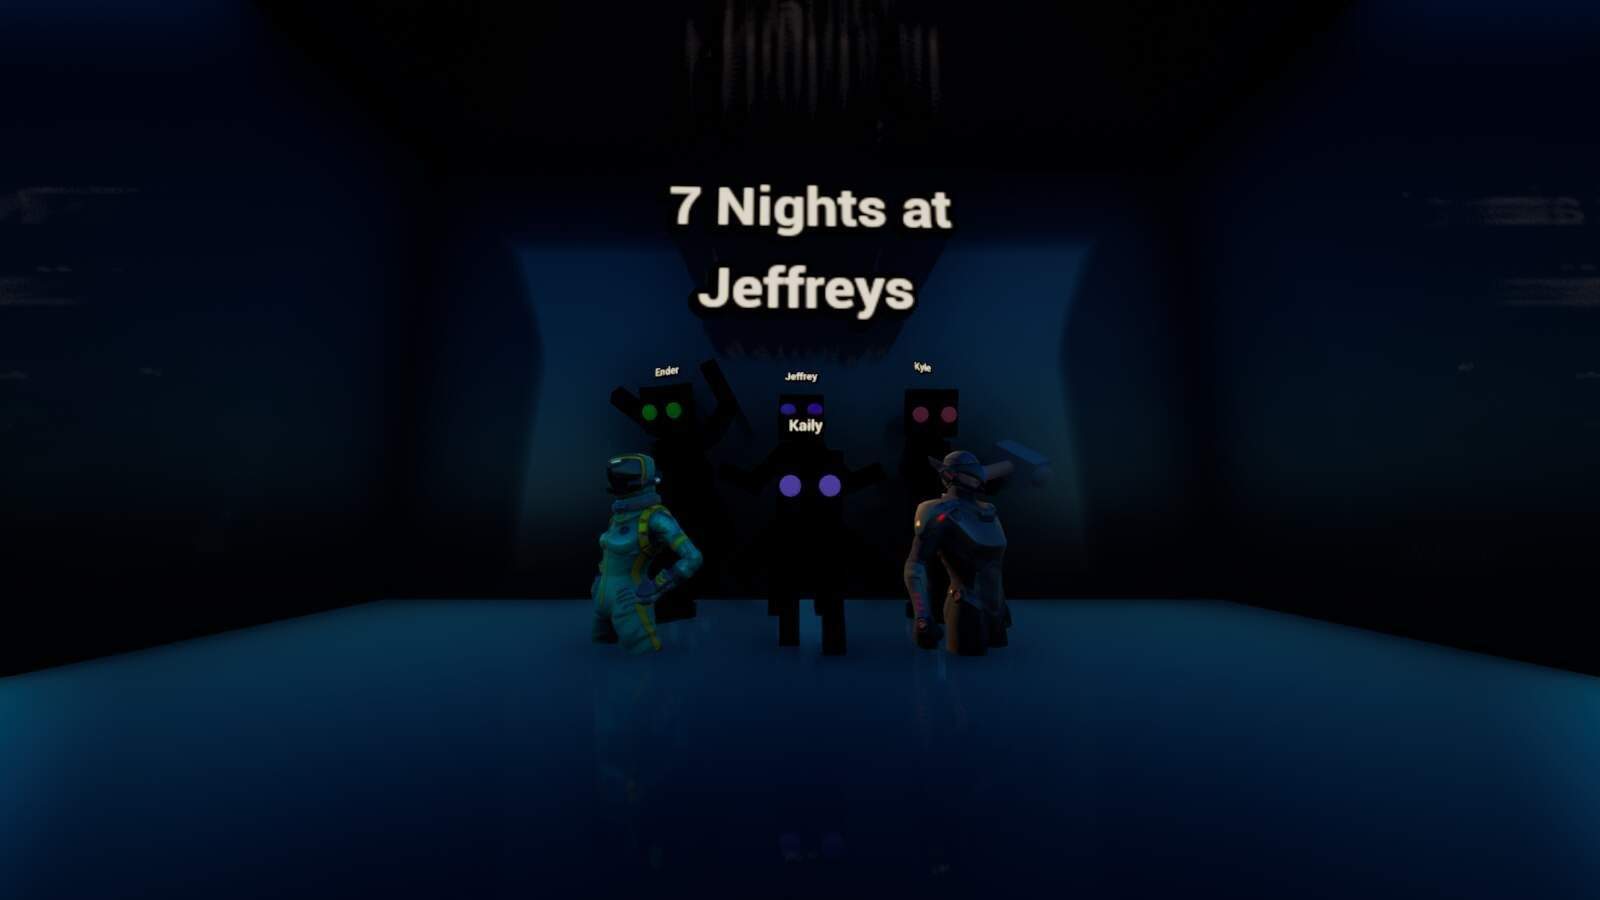 7 NIGHTS AT JEFFREYS